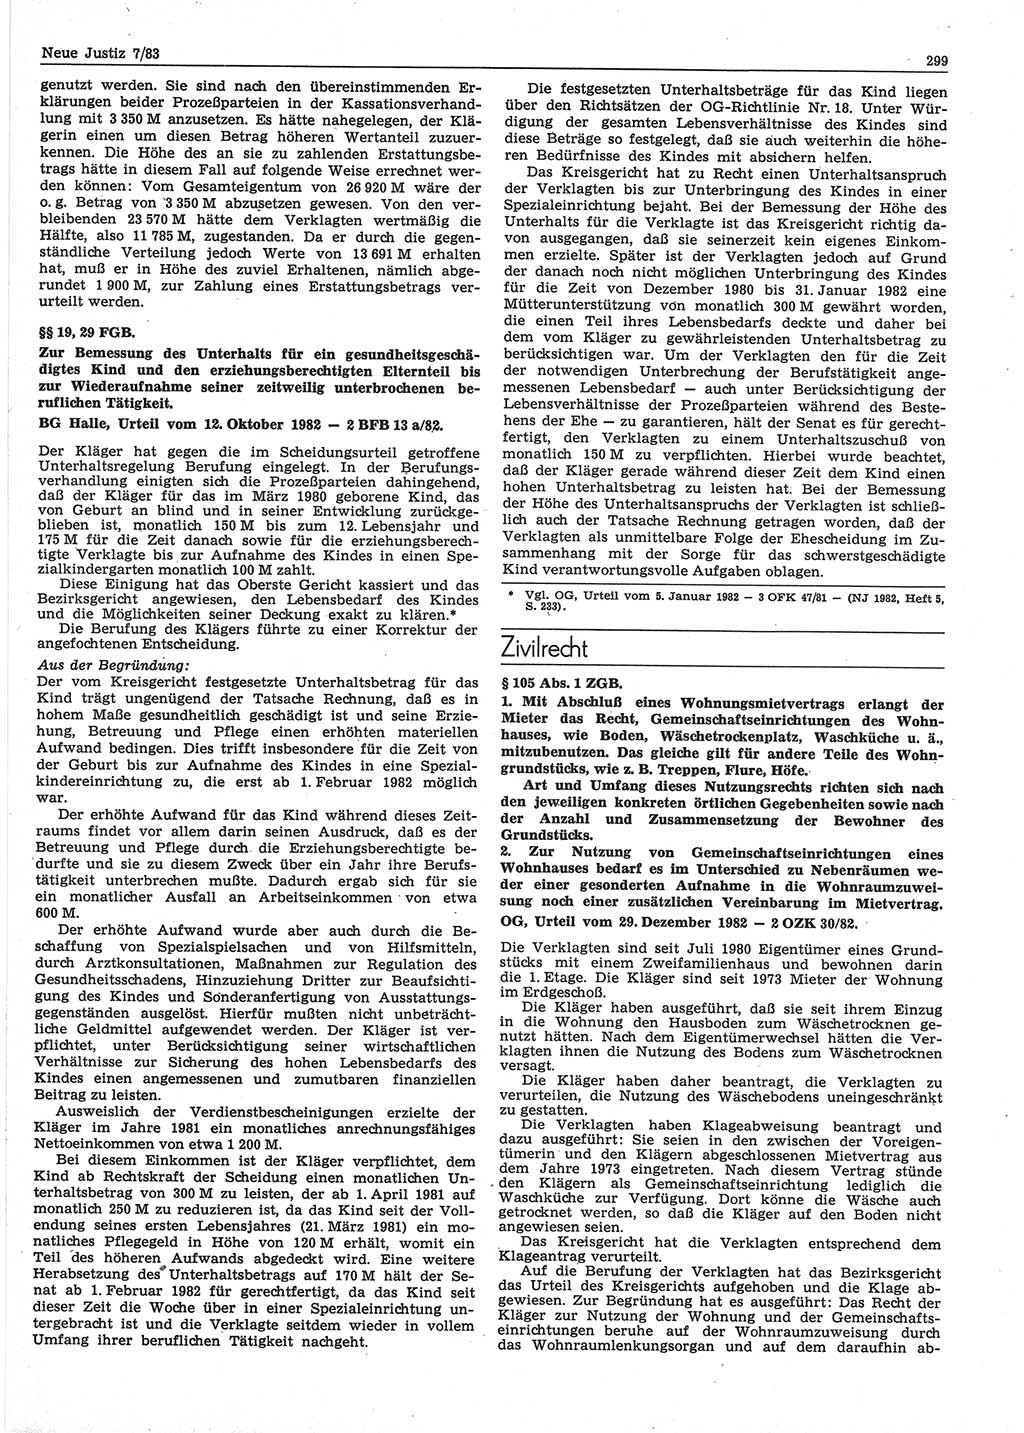 Neue Justiz (NJ), Zeitschrift für sozialistisches Recht und Gesetzlichkeit [Deutsche Demokratische Republik (DDR)], 37. Jahrgang 1983, Seite 299 (NJ DDR 1983, S. 299)